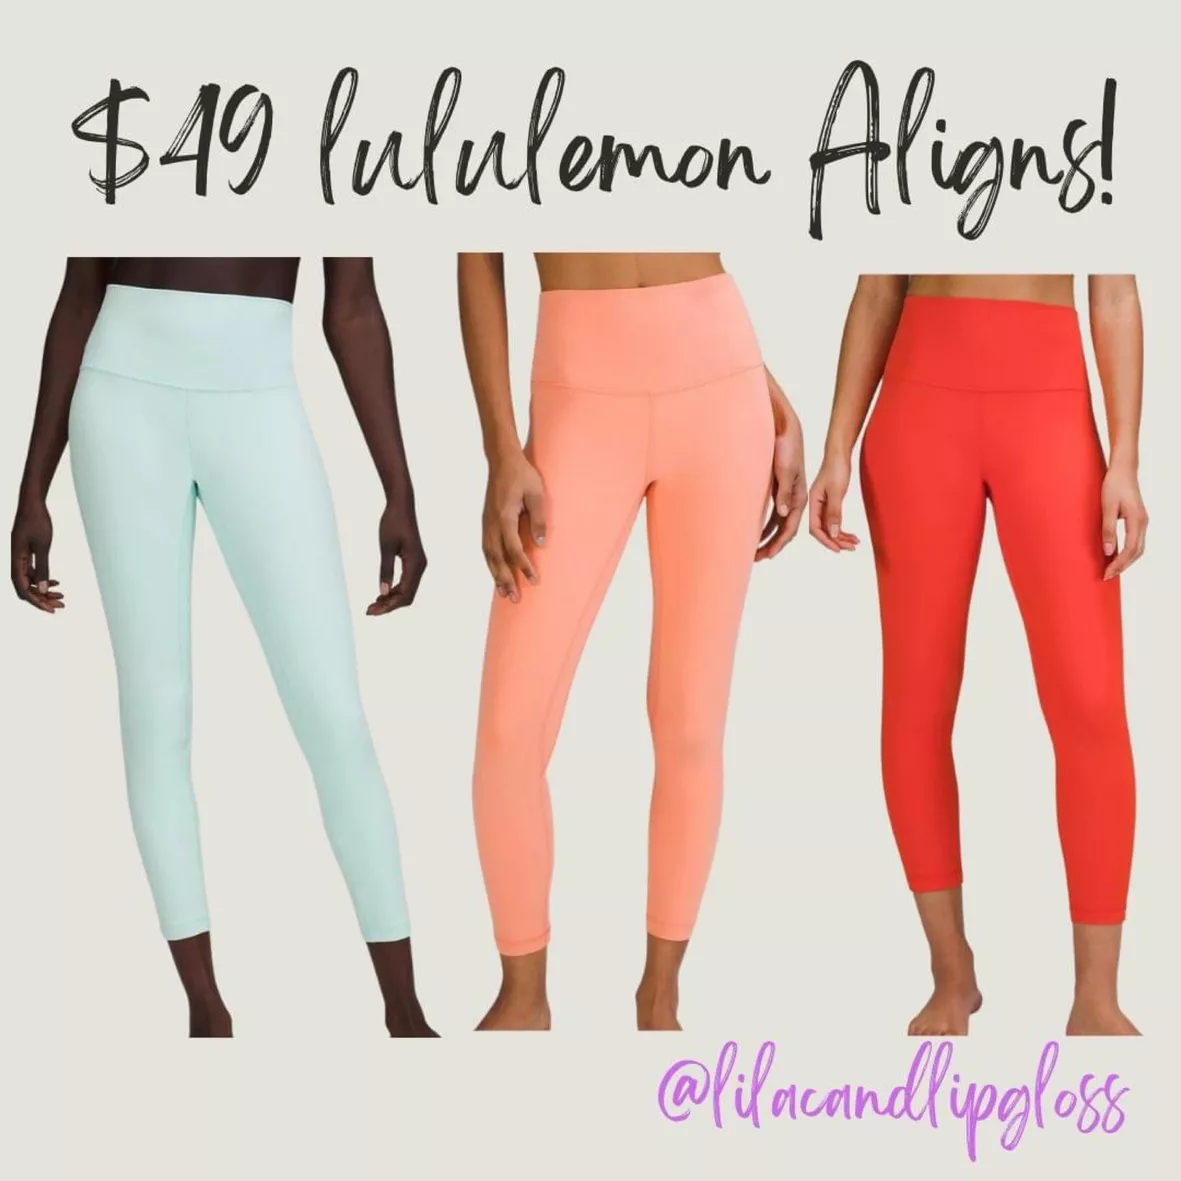 LULULEMON Align high-rise leggings … curated on LTK